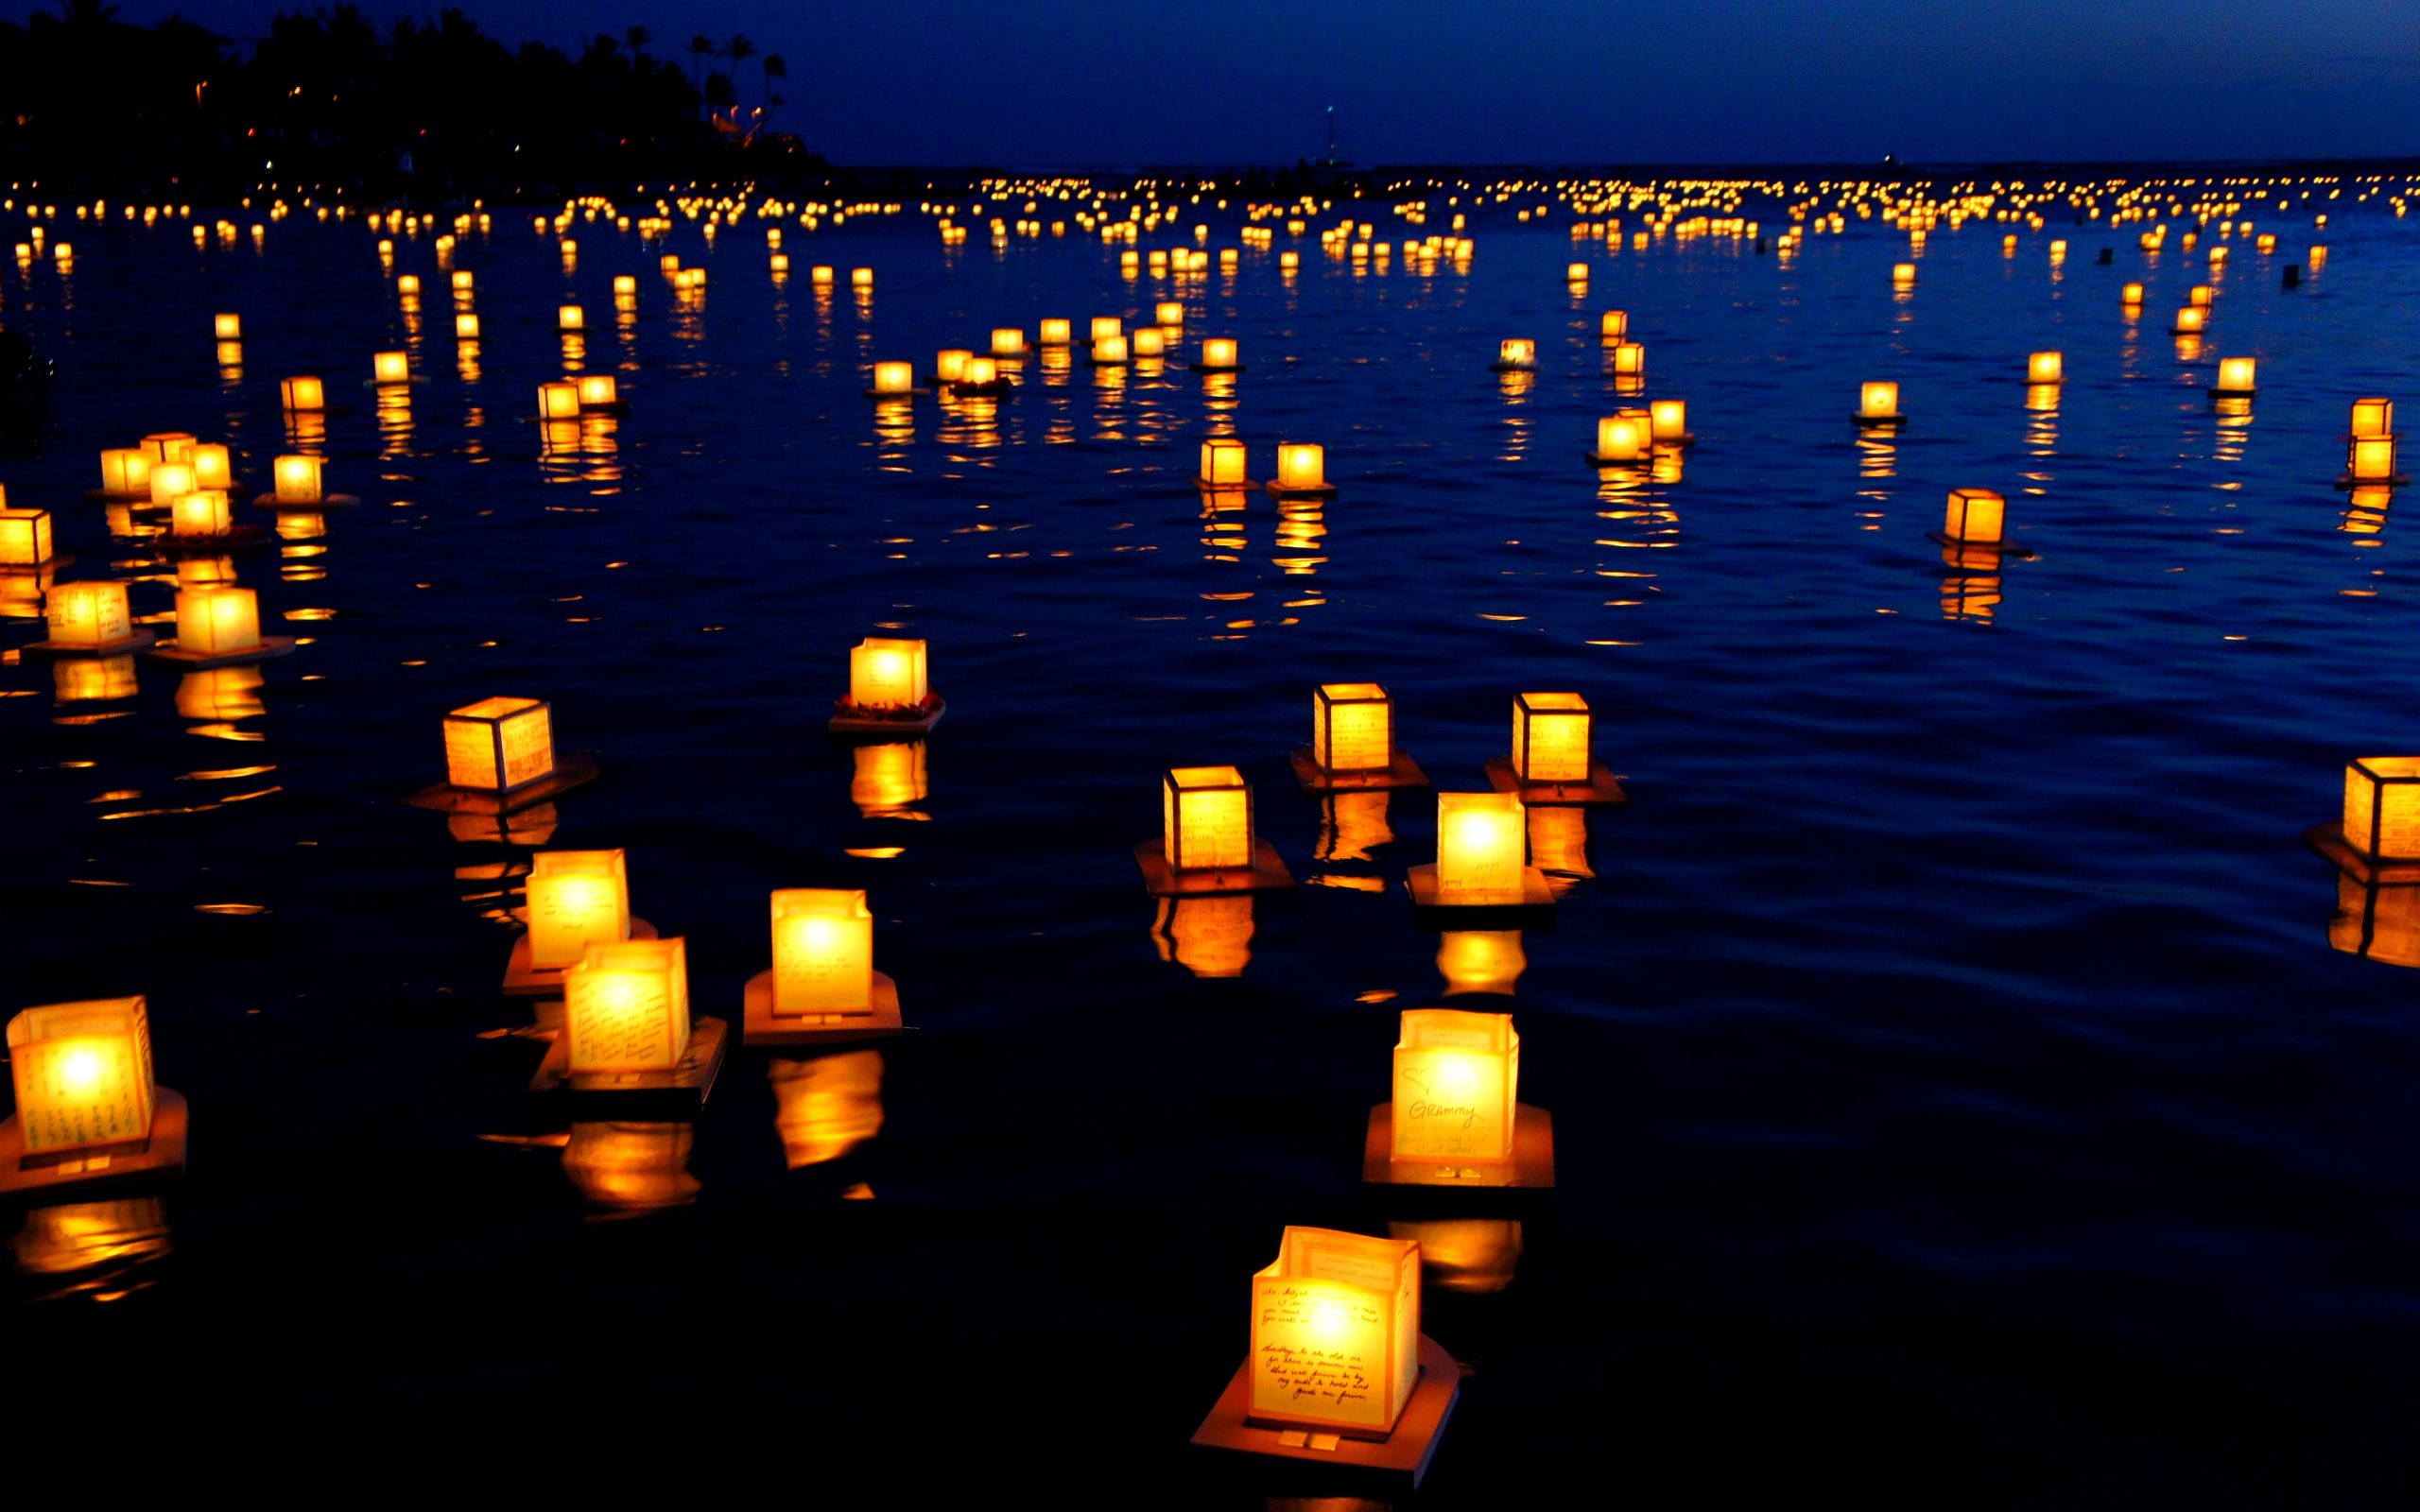 دانلود تصویر شمع های روشن رها شده روی آب برای تسلیت 